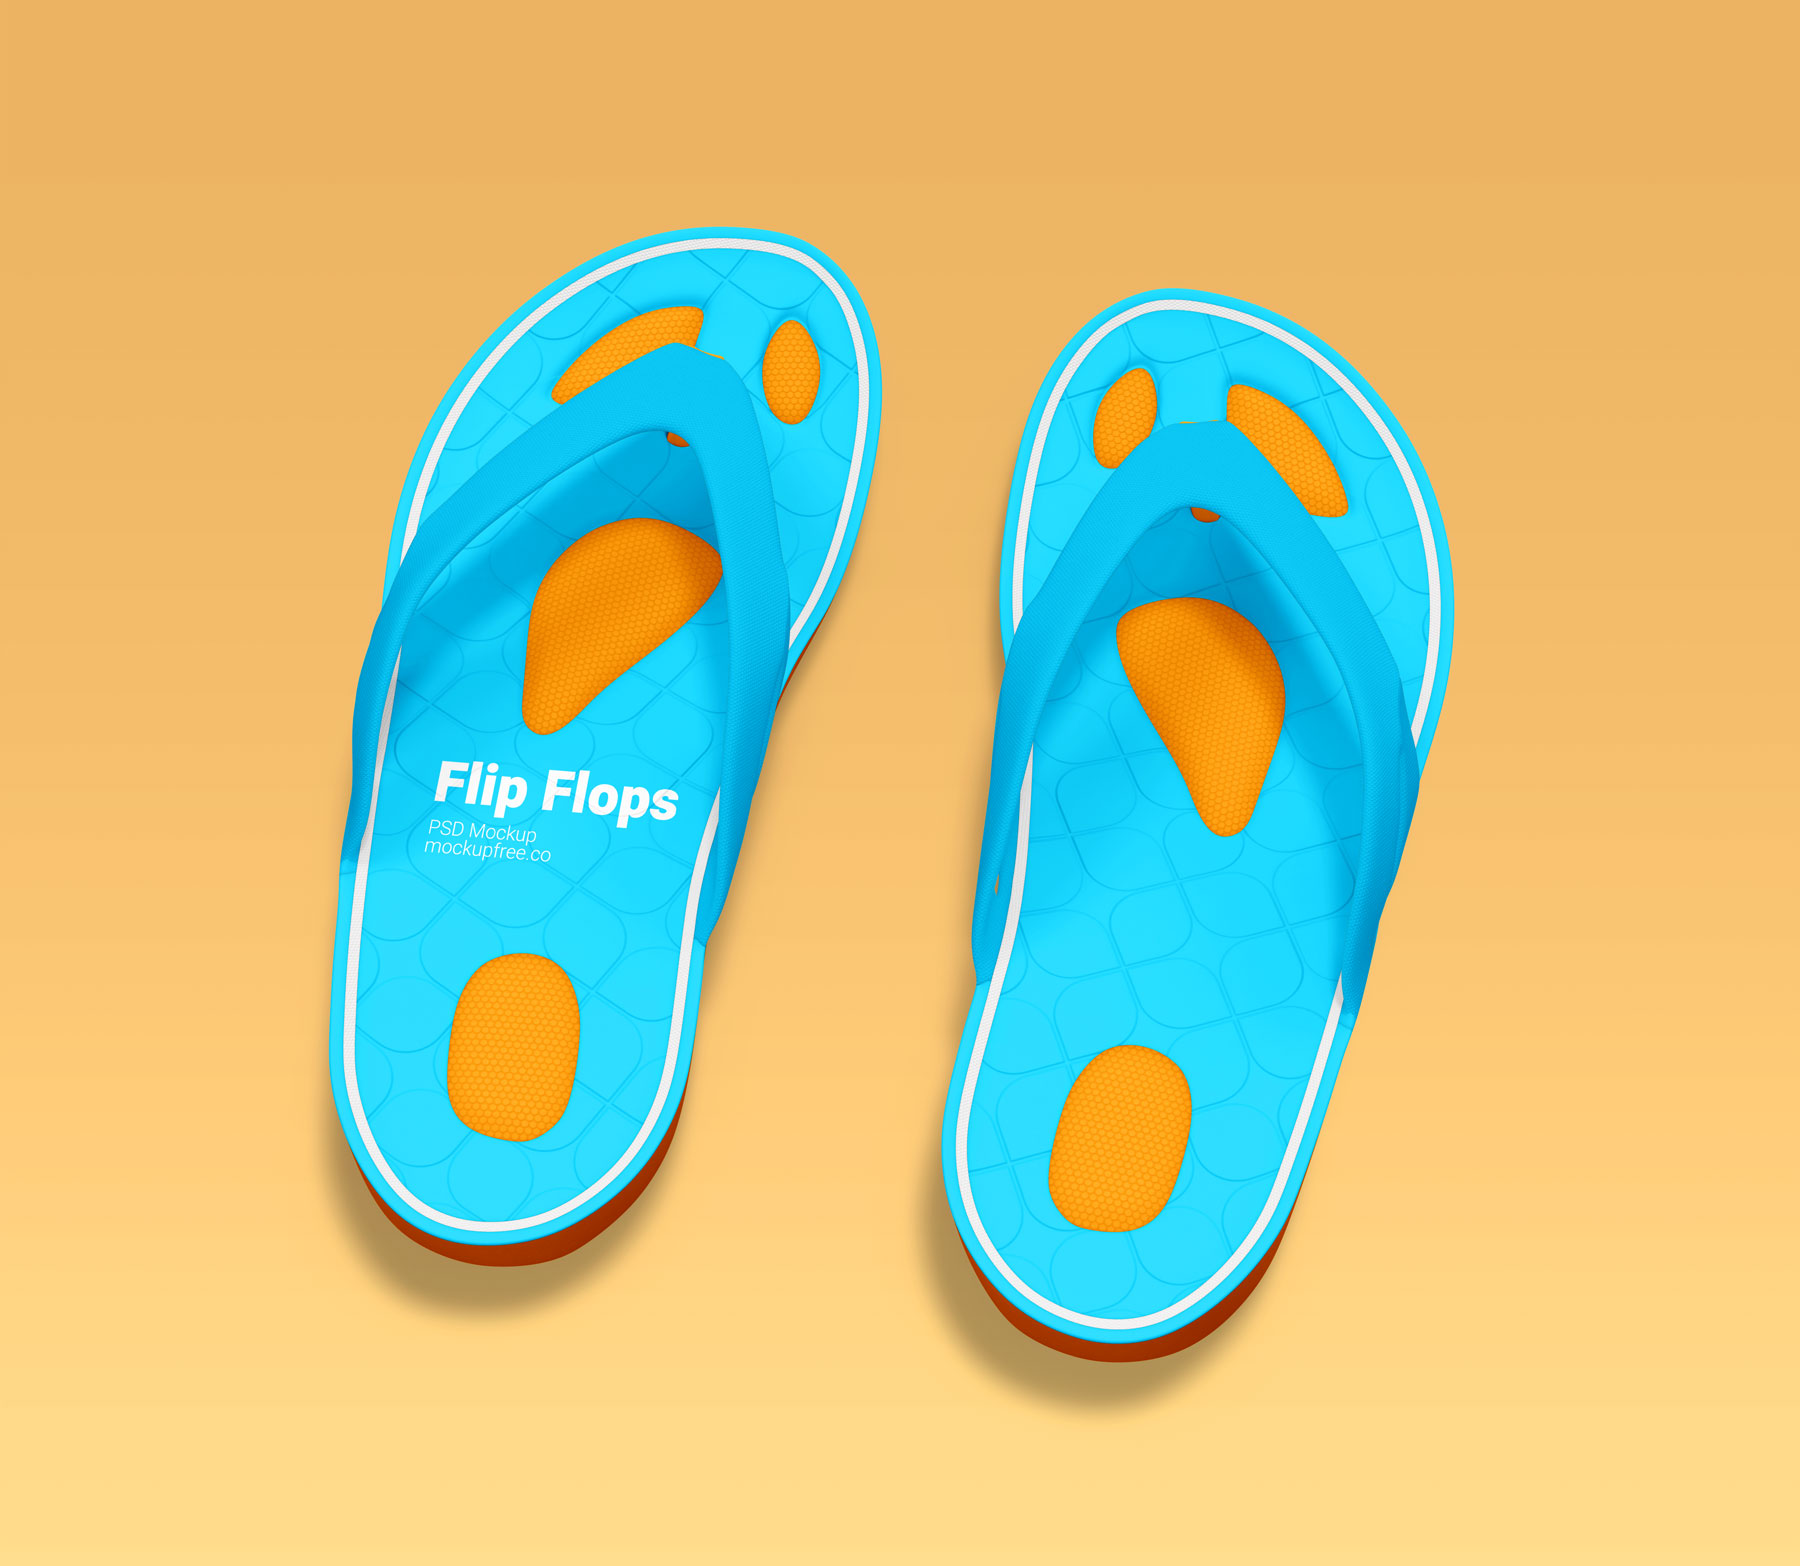 Free Flip Flops Mockups PSD